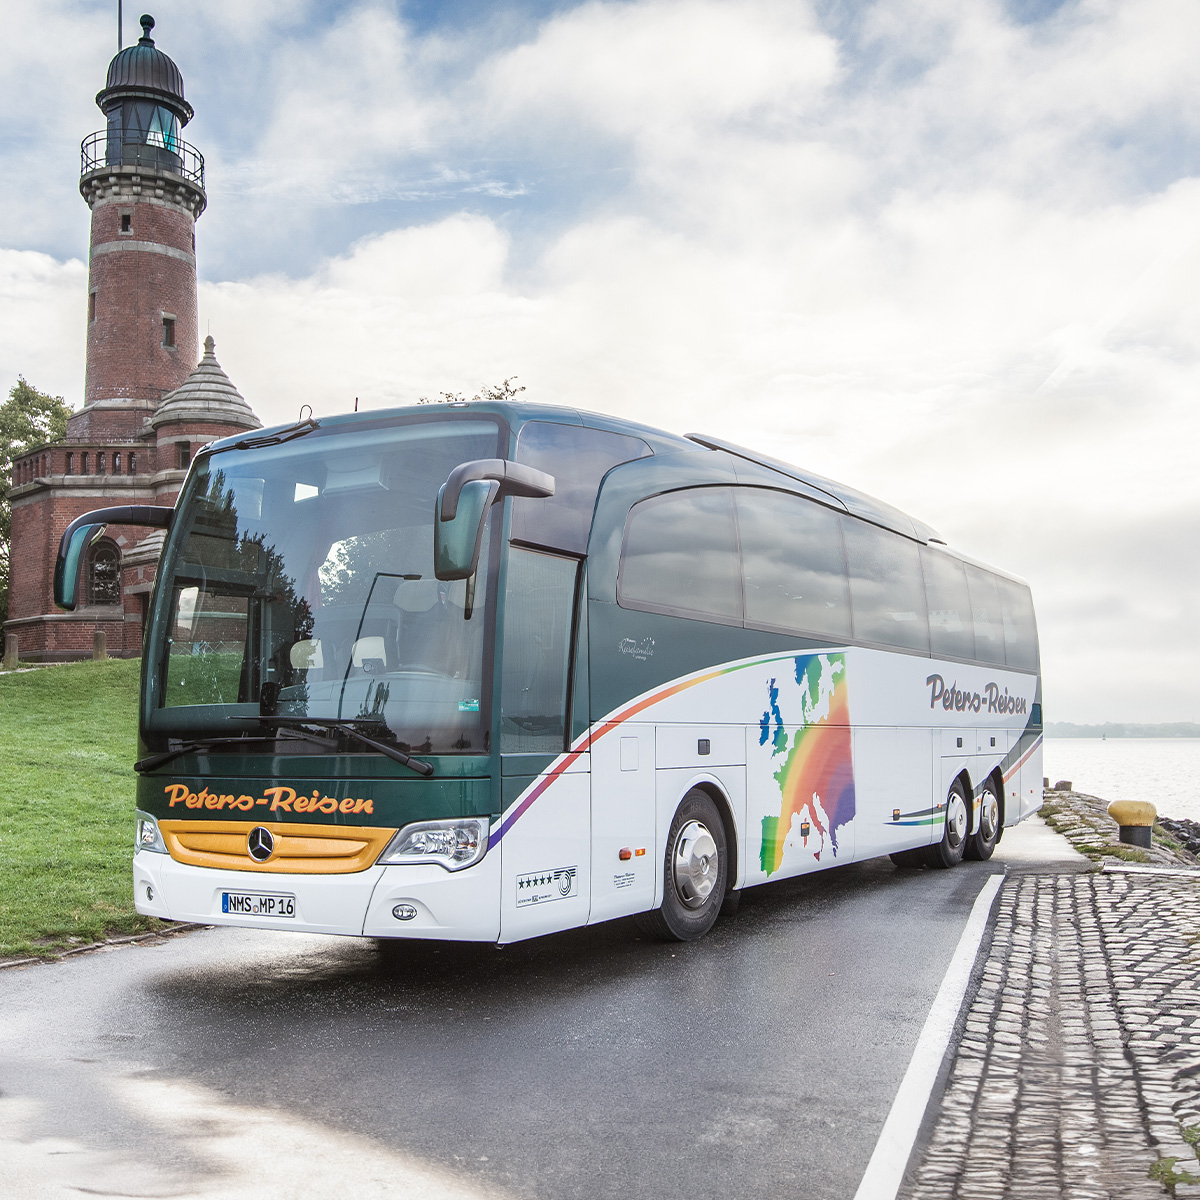 4 Sterne Peters-Bus - Tourismo (14m), 52 Sitzplätze (80 cm Sitzabstand)